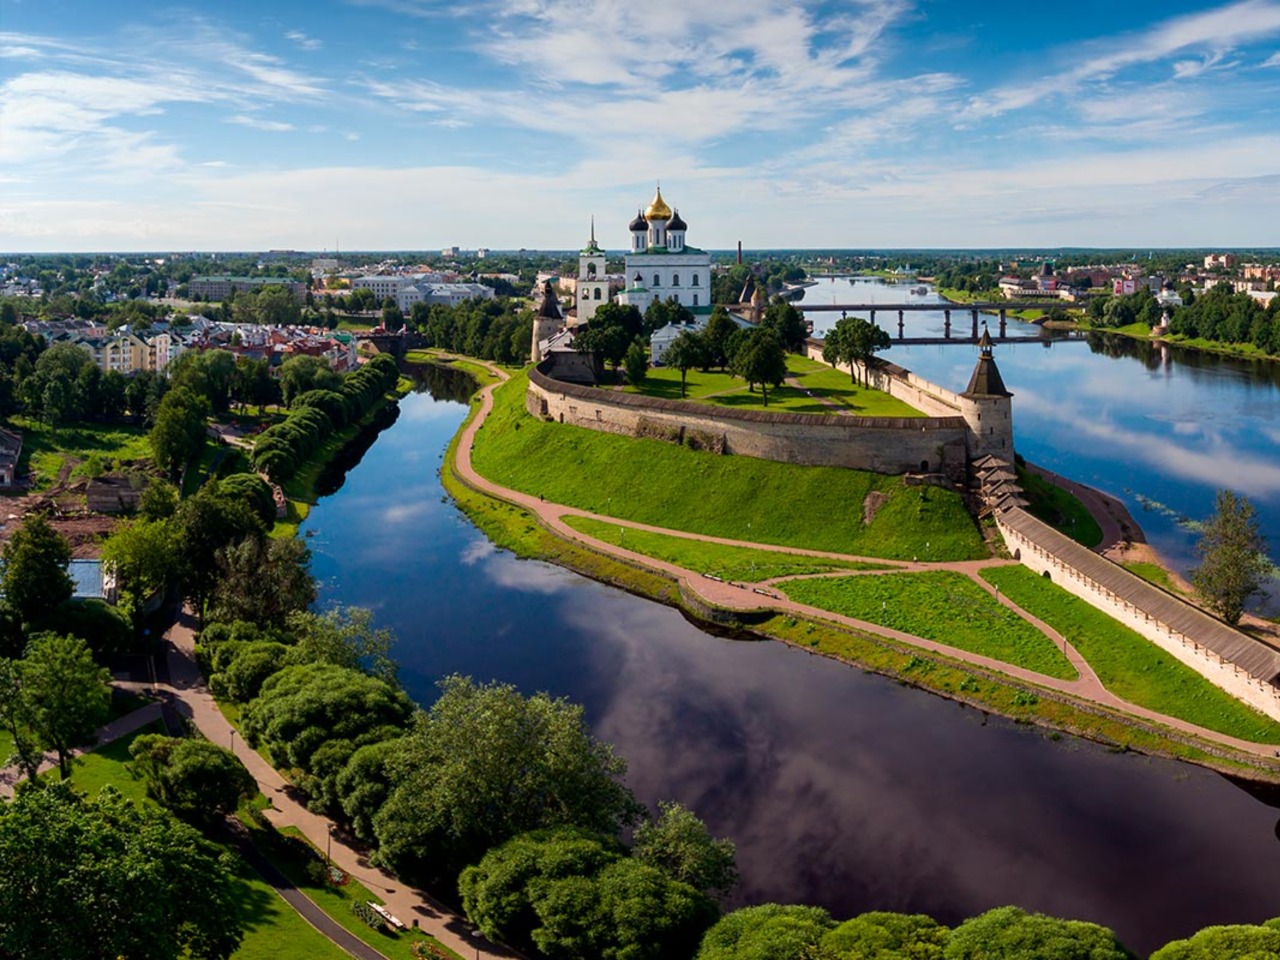 Экскурсия по Кремлю «Душа древнего Пскова» | Цена 3750₽, отзывы, описание экскурсии